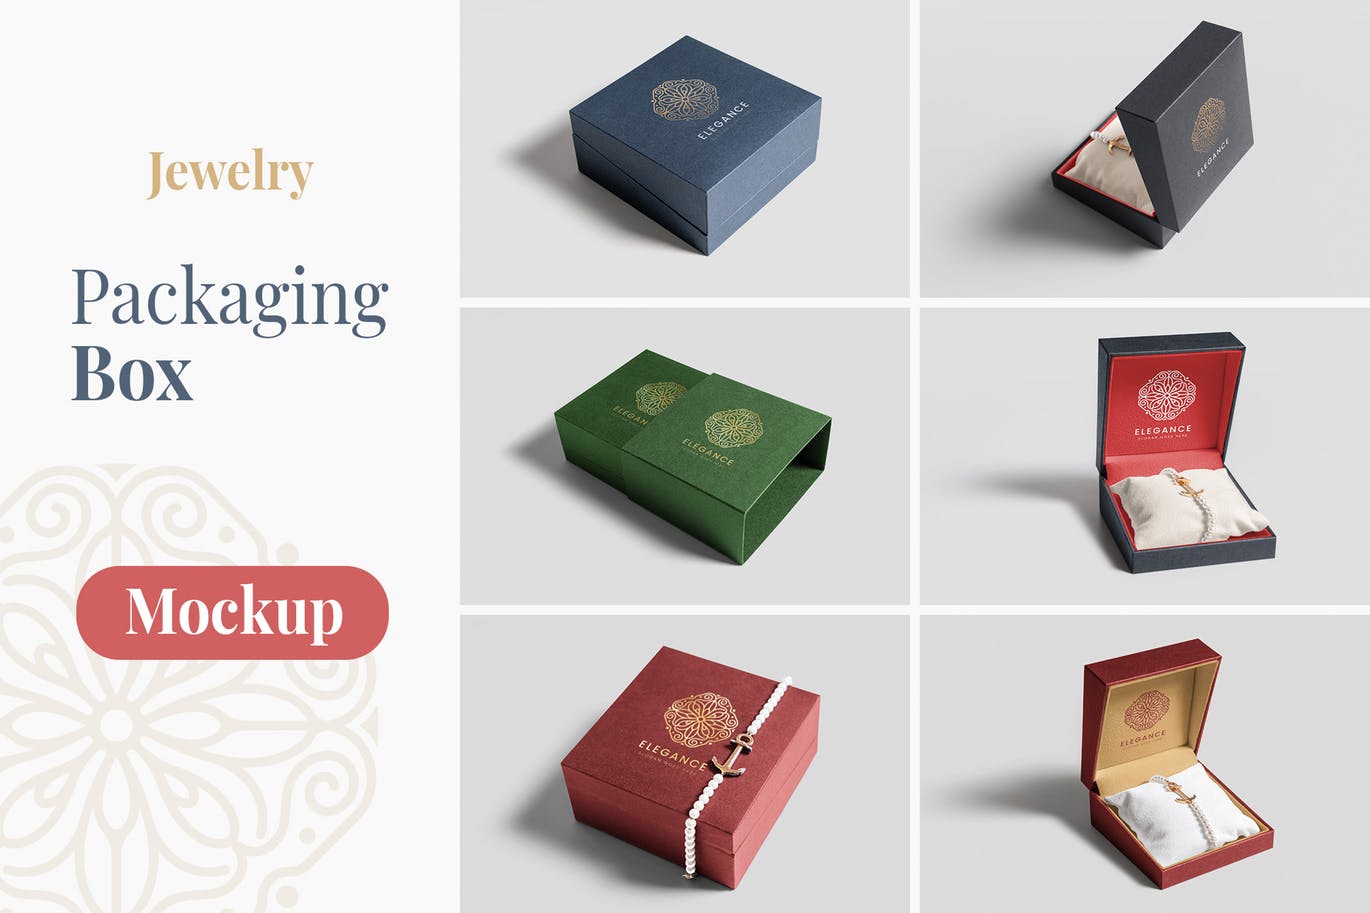 珠宝包装盒设计图素材中国精选模板 Jewelry Packaging Box Mockups插图